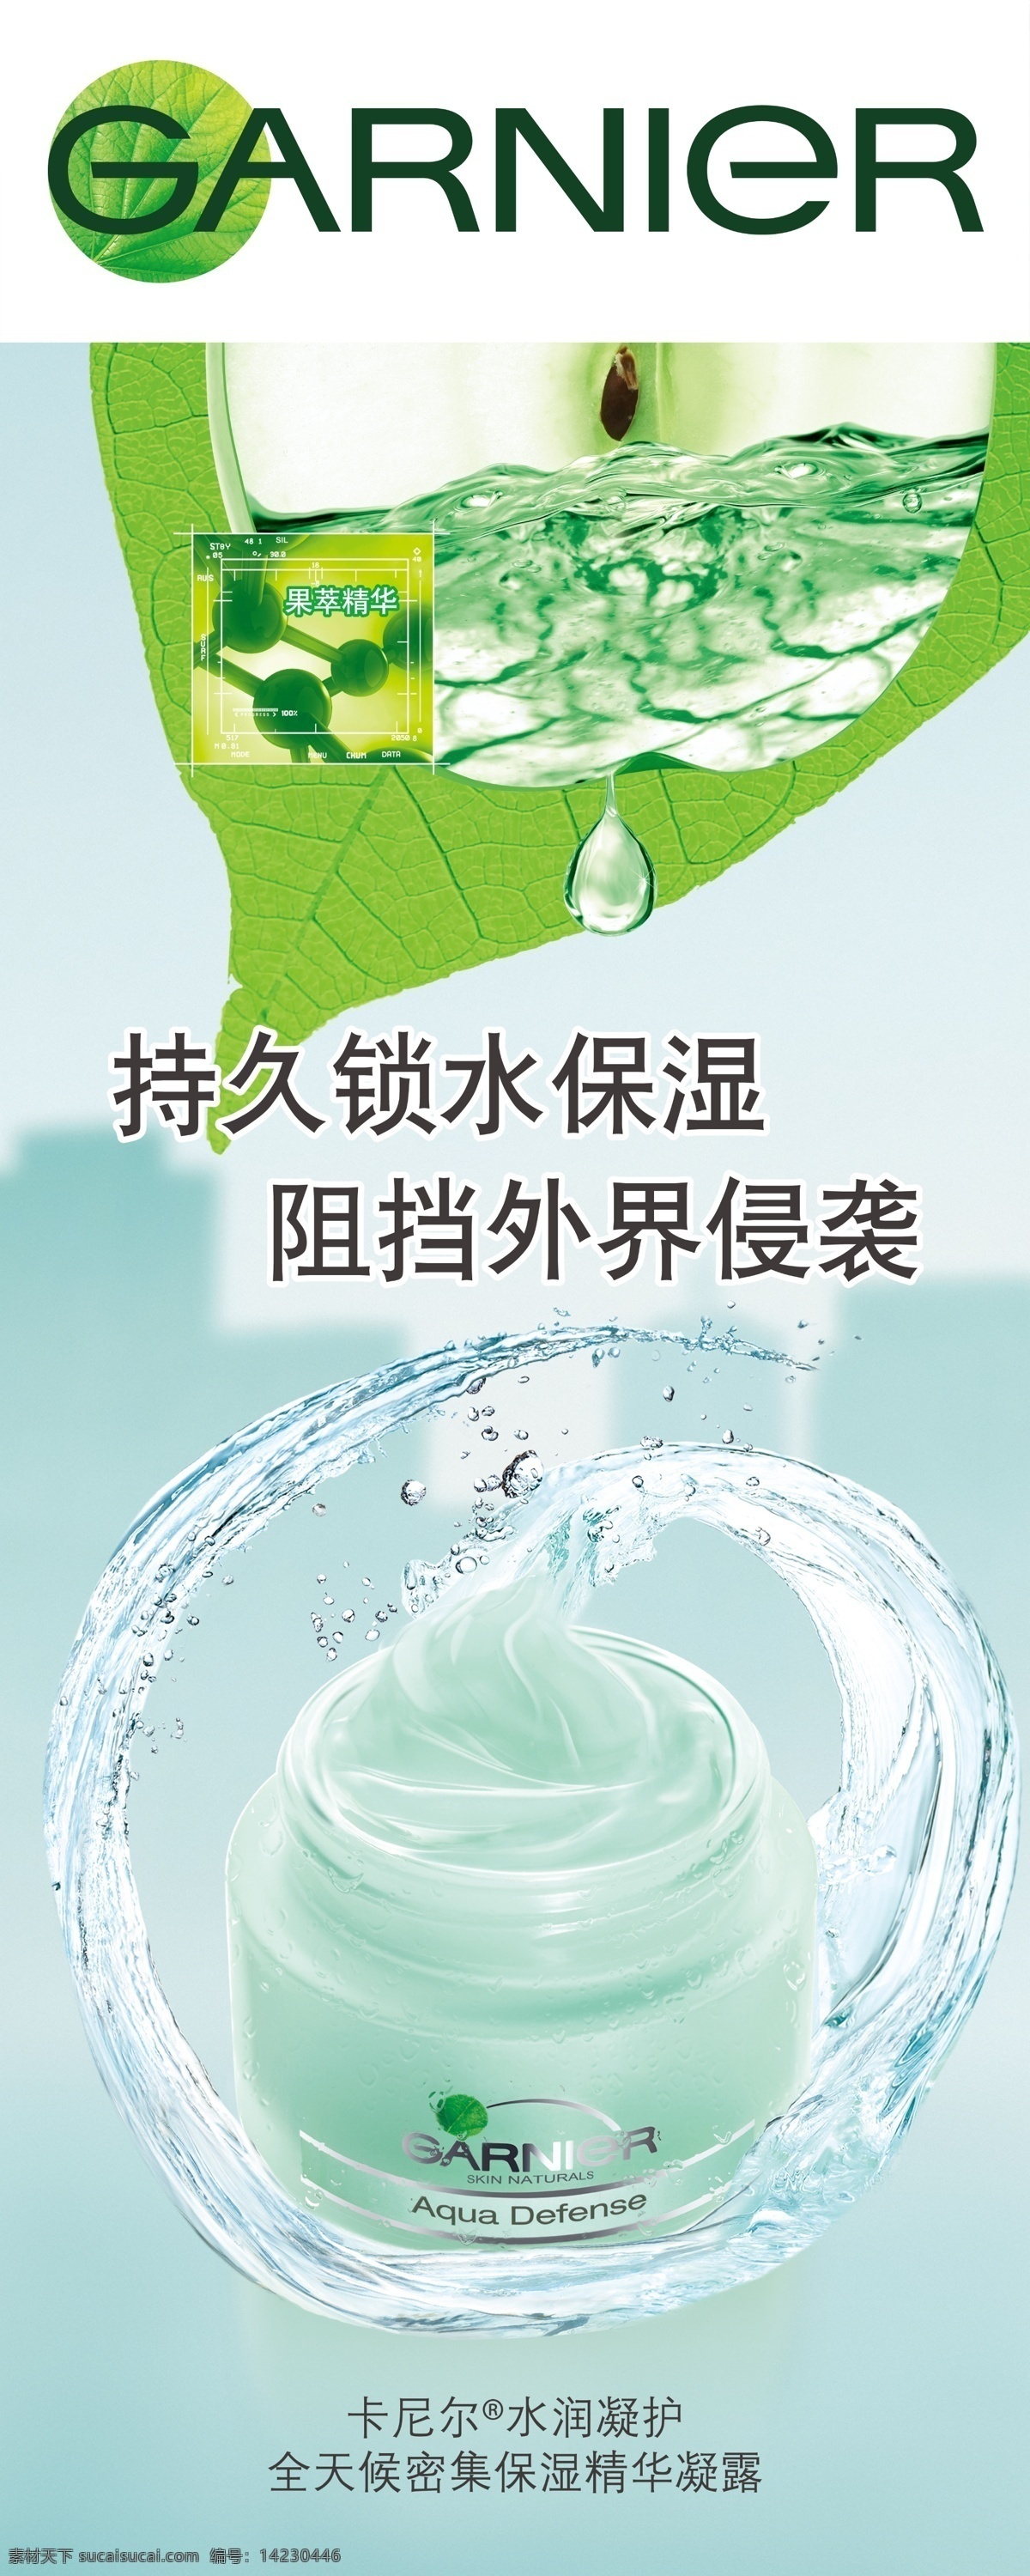 卡尼尔 刘亦菲 广告 画面 海报 美女 化妆品 分层 源文件